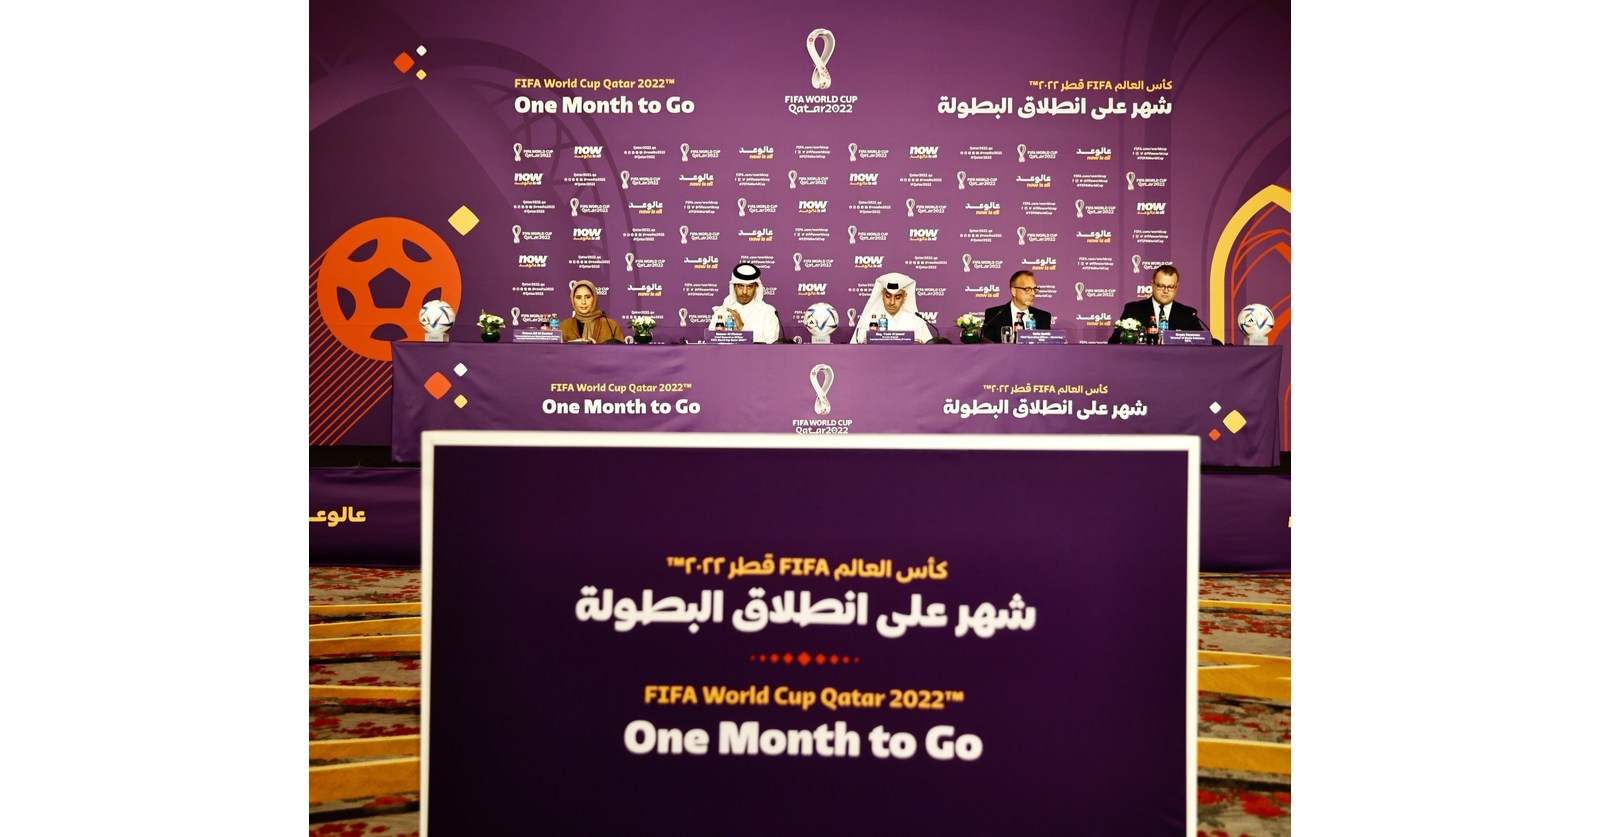 Les organisateurs de Qatar 2022 annoncent 30 000 chambres supplémentaires pour les visiteurs de la Coupe du monde